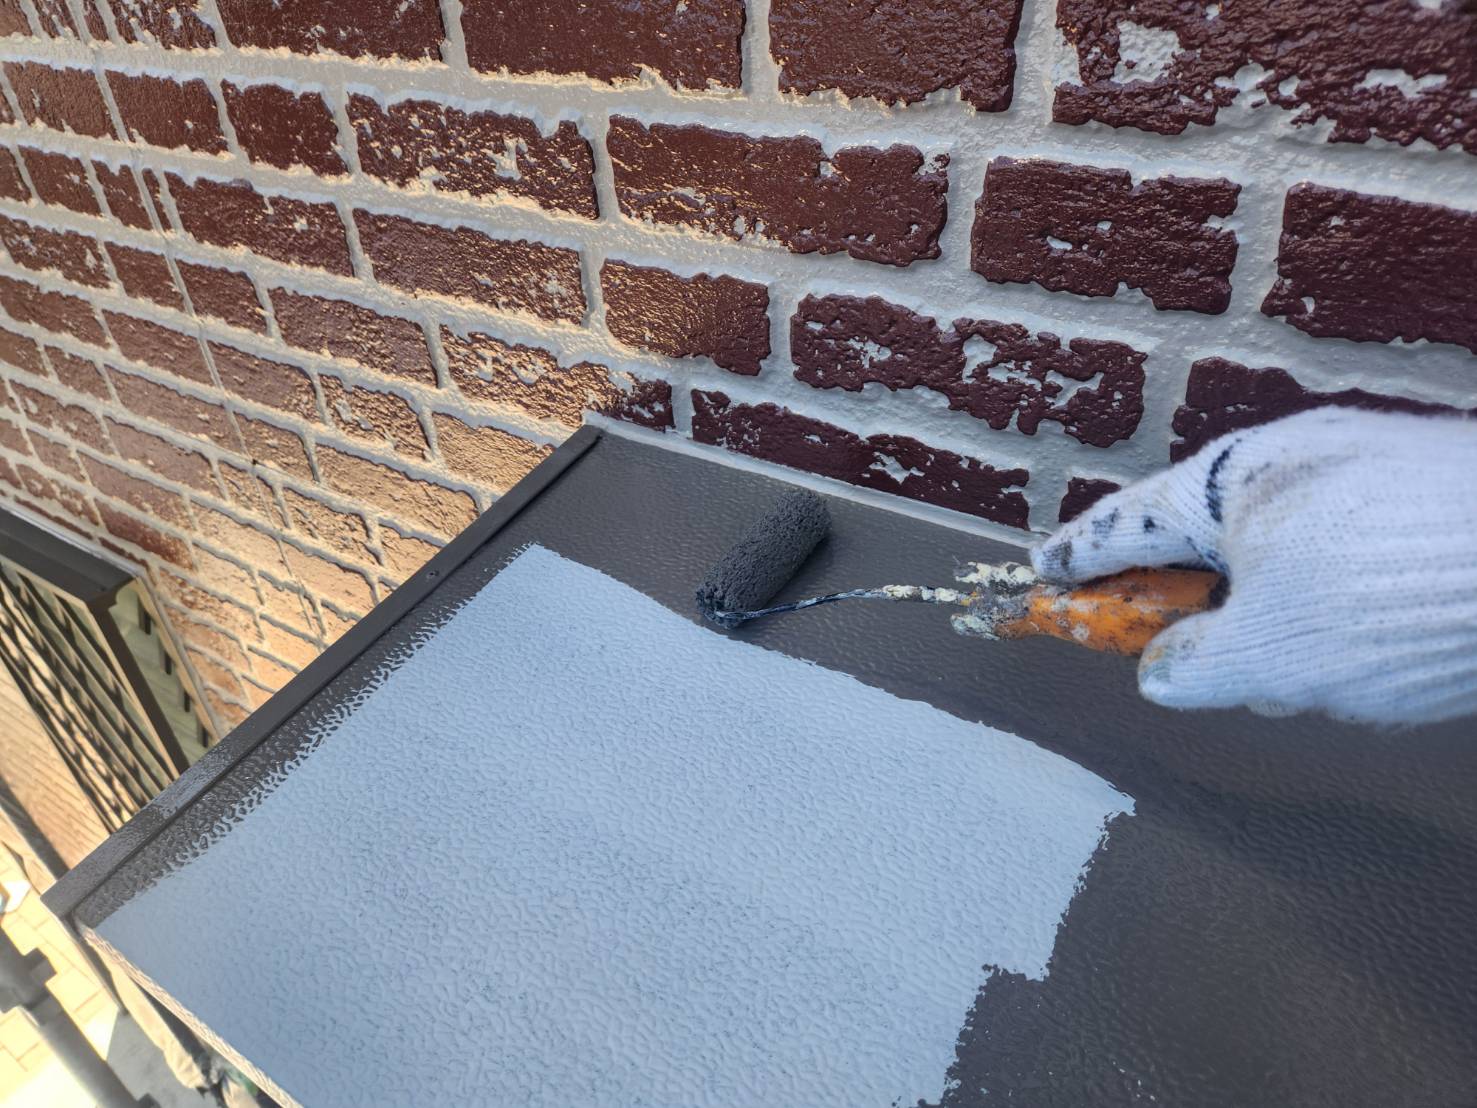 福岡県福岡市南区三宅のI様邸でプレミアムペイントの市場最高級シリコン樹脂を含有する水性ピュアピュアシリコンを使用した高品質な外壁塗装工事を行いました。5/31完成です。【HPより】